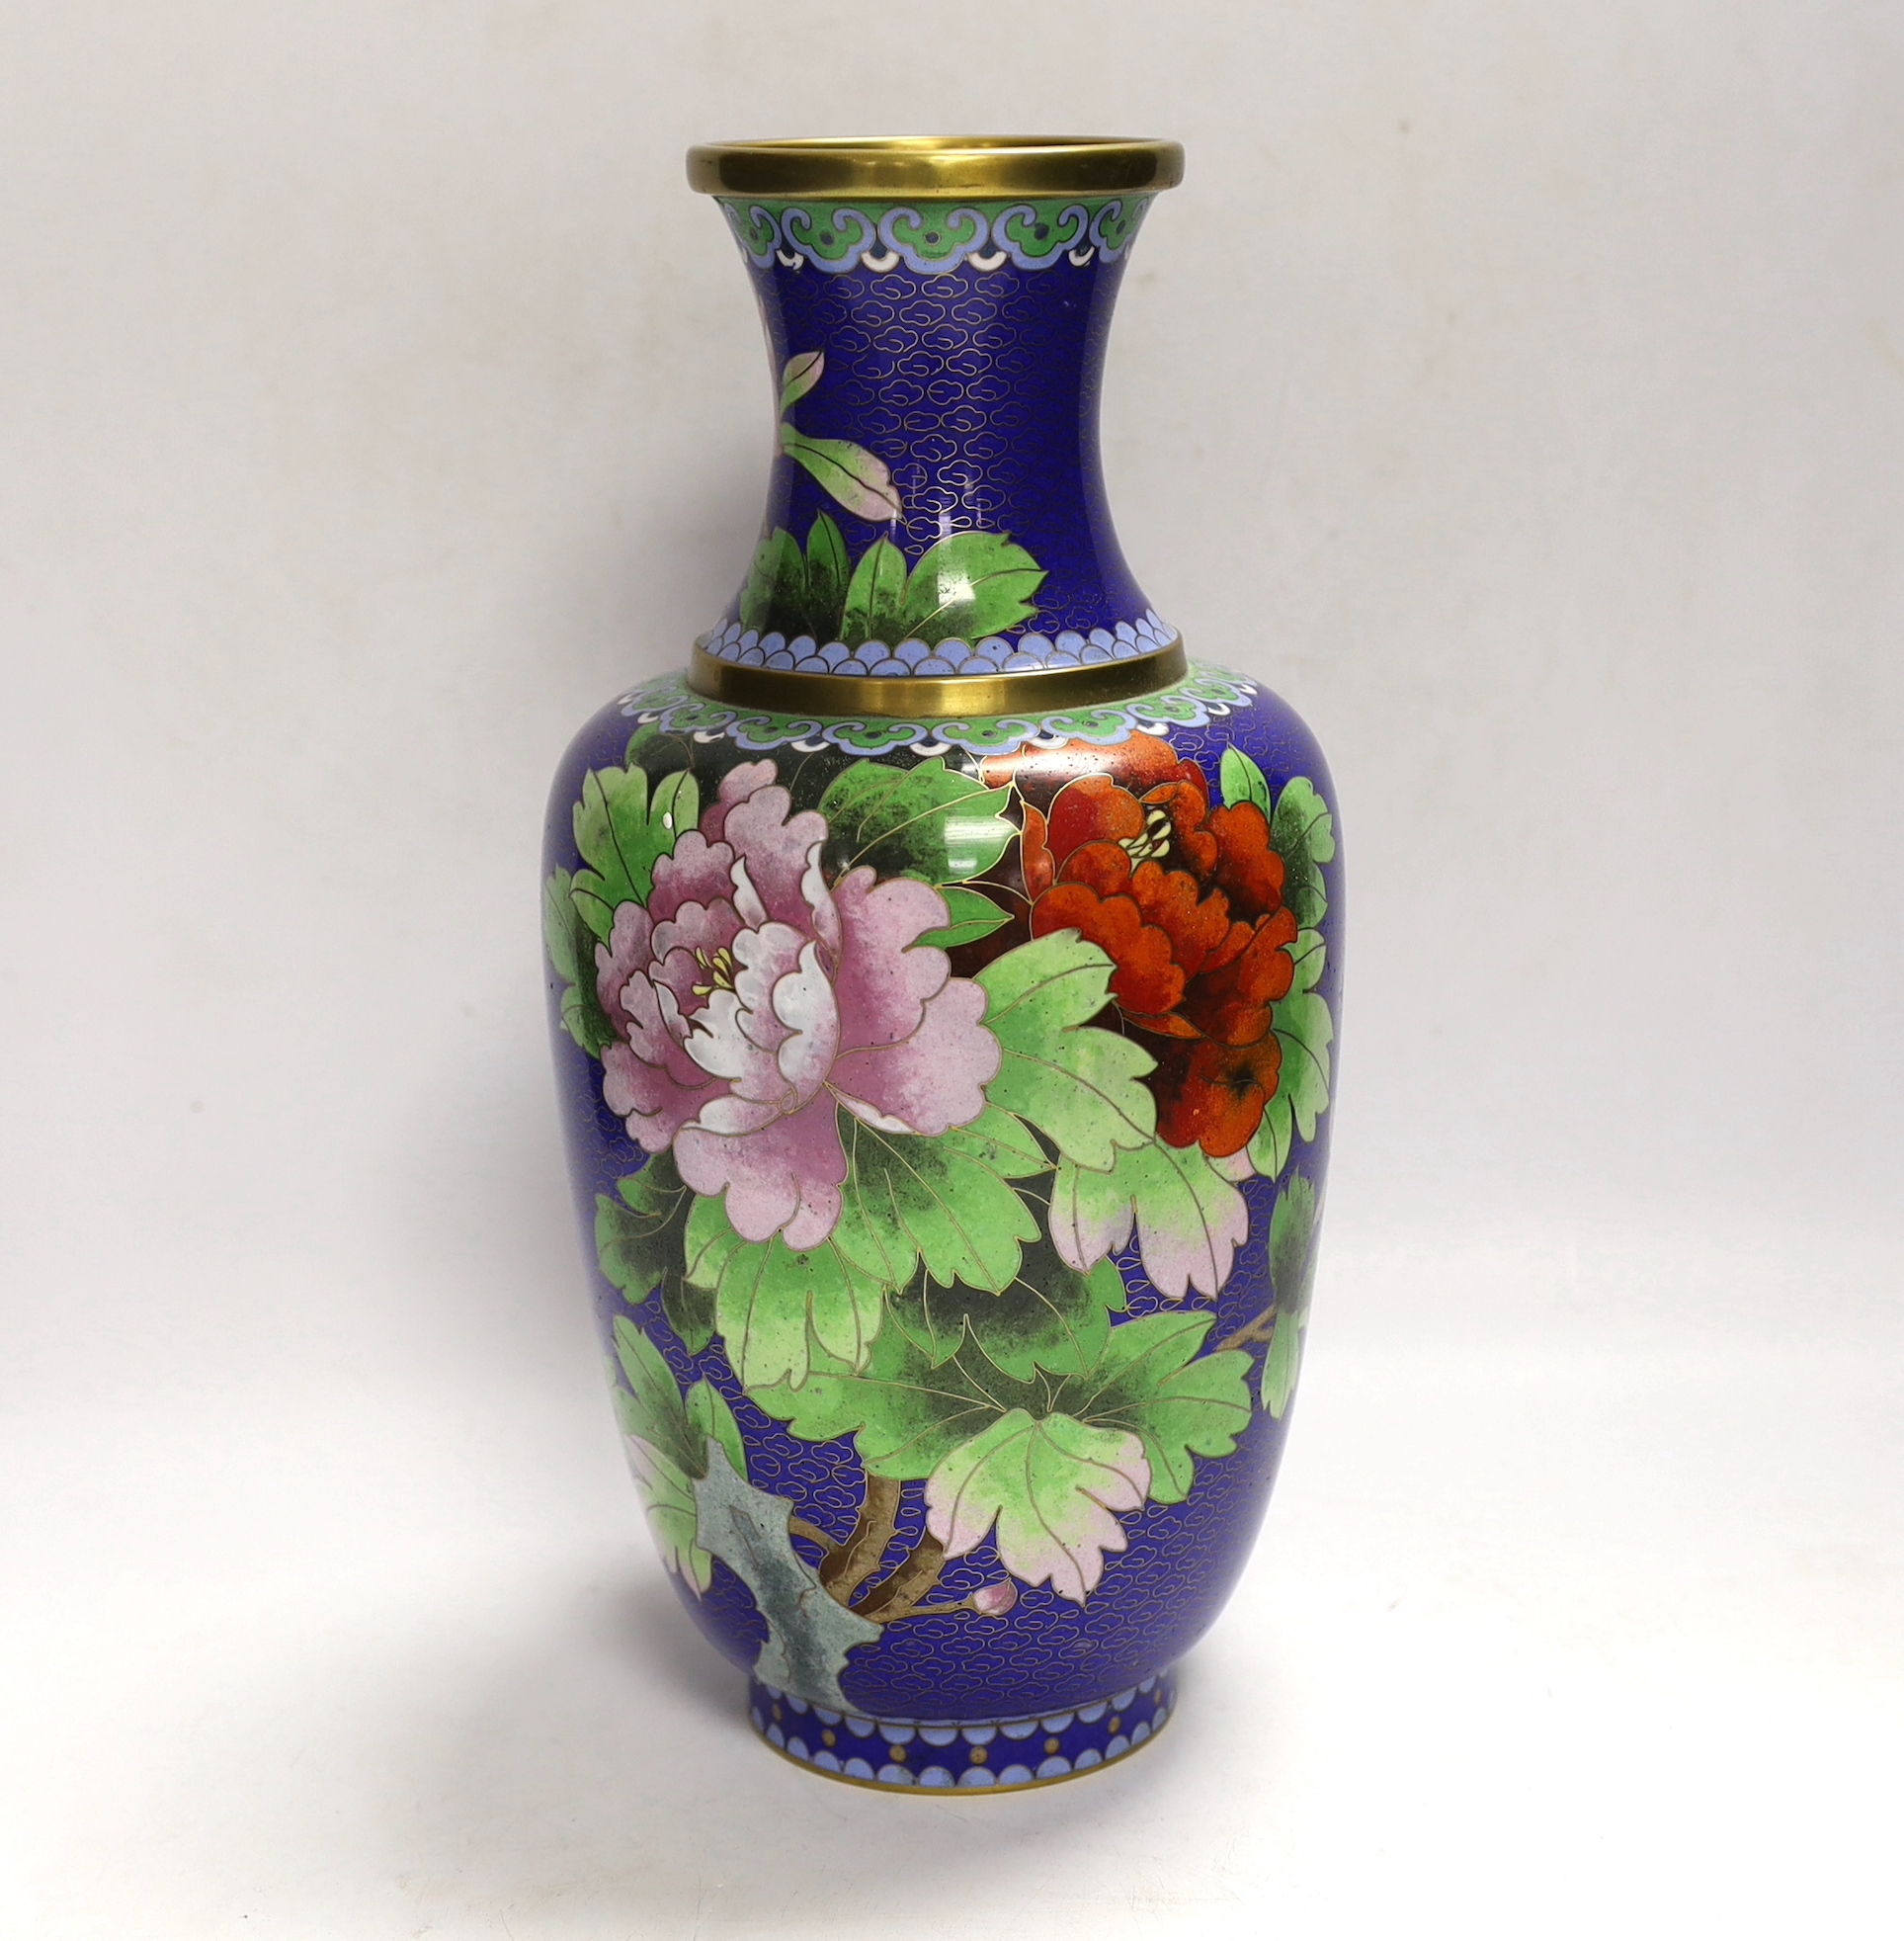 A Chinese cloisonné enamel vase, 31cm